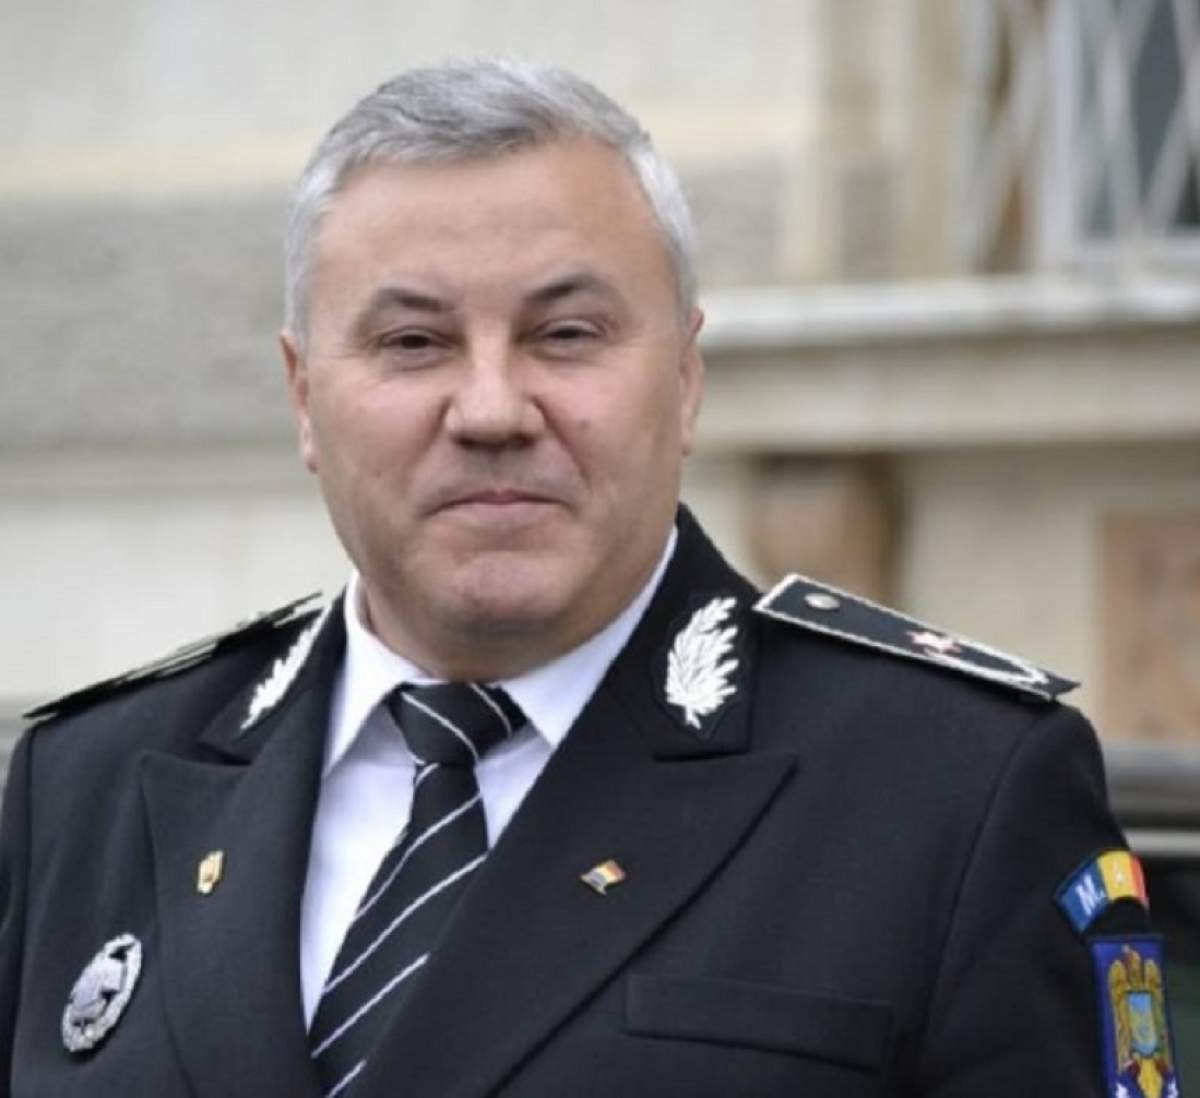 Şeful Poliţiei din Bacău le cere femeilor bătute de soţi să nu sune noaptea la 112: "Se poate şi dimineaţă" / VIDEO